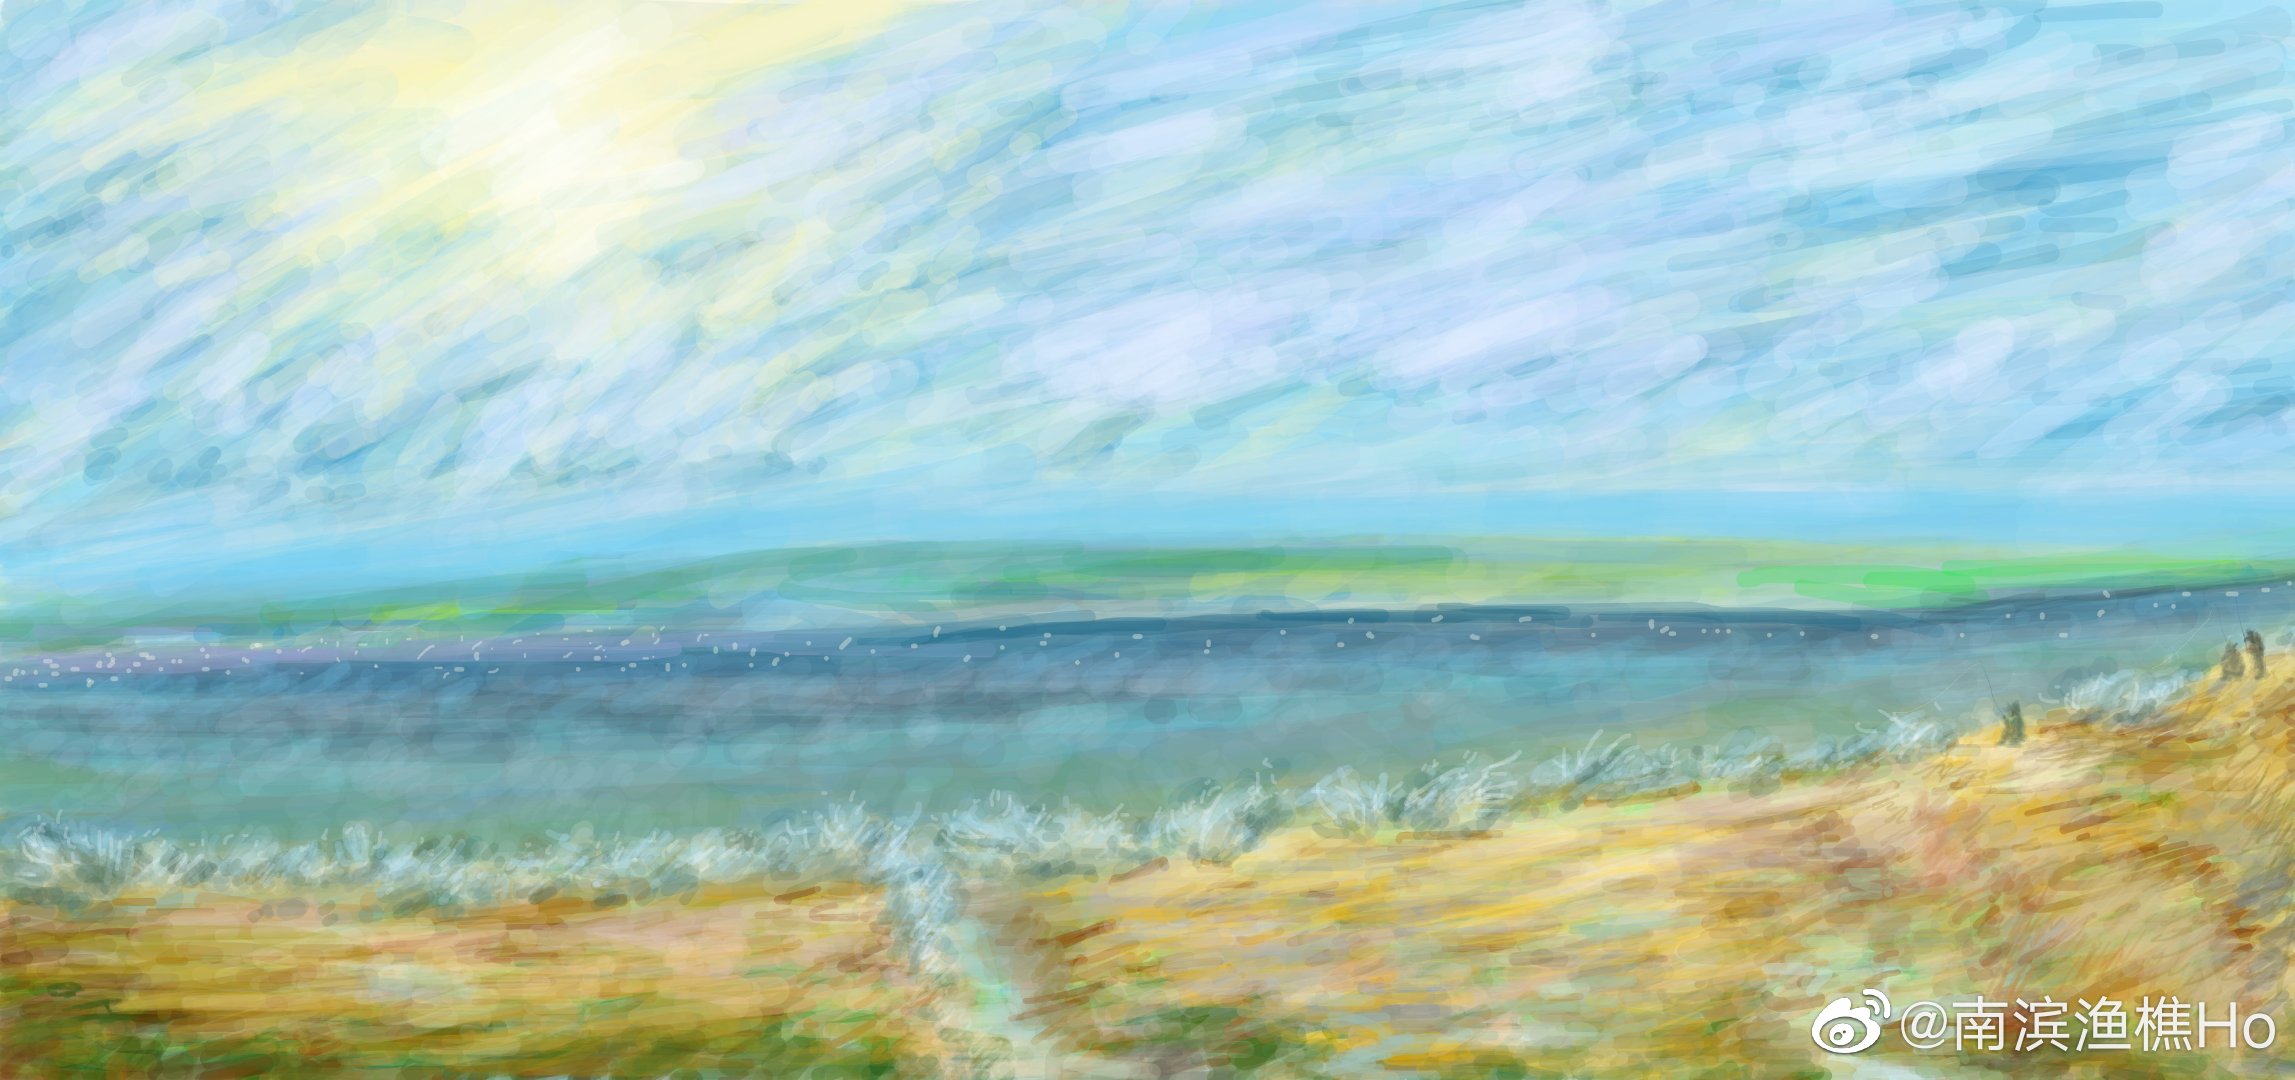 General 2295x1080 landscape river sky spring modern impressionism digital painting painting artwork digital art